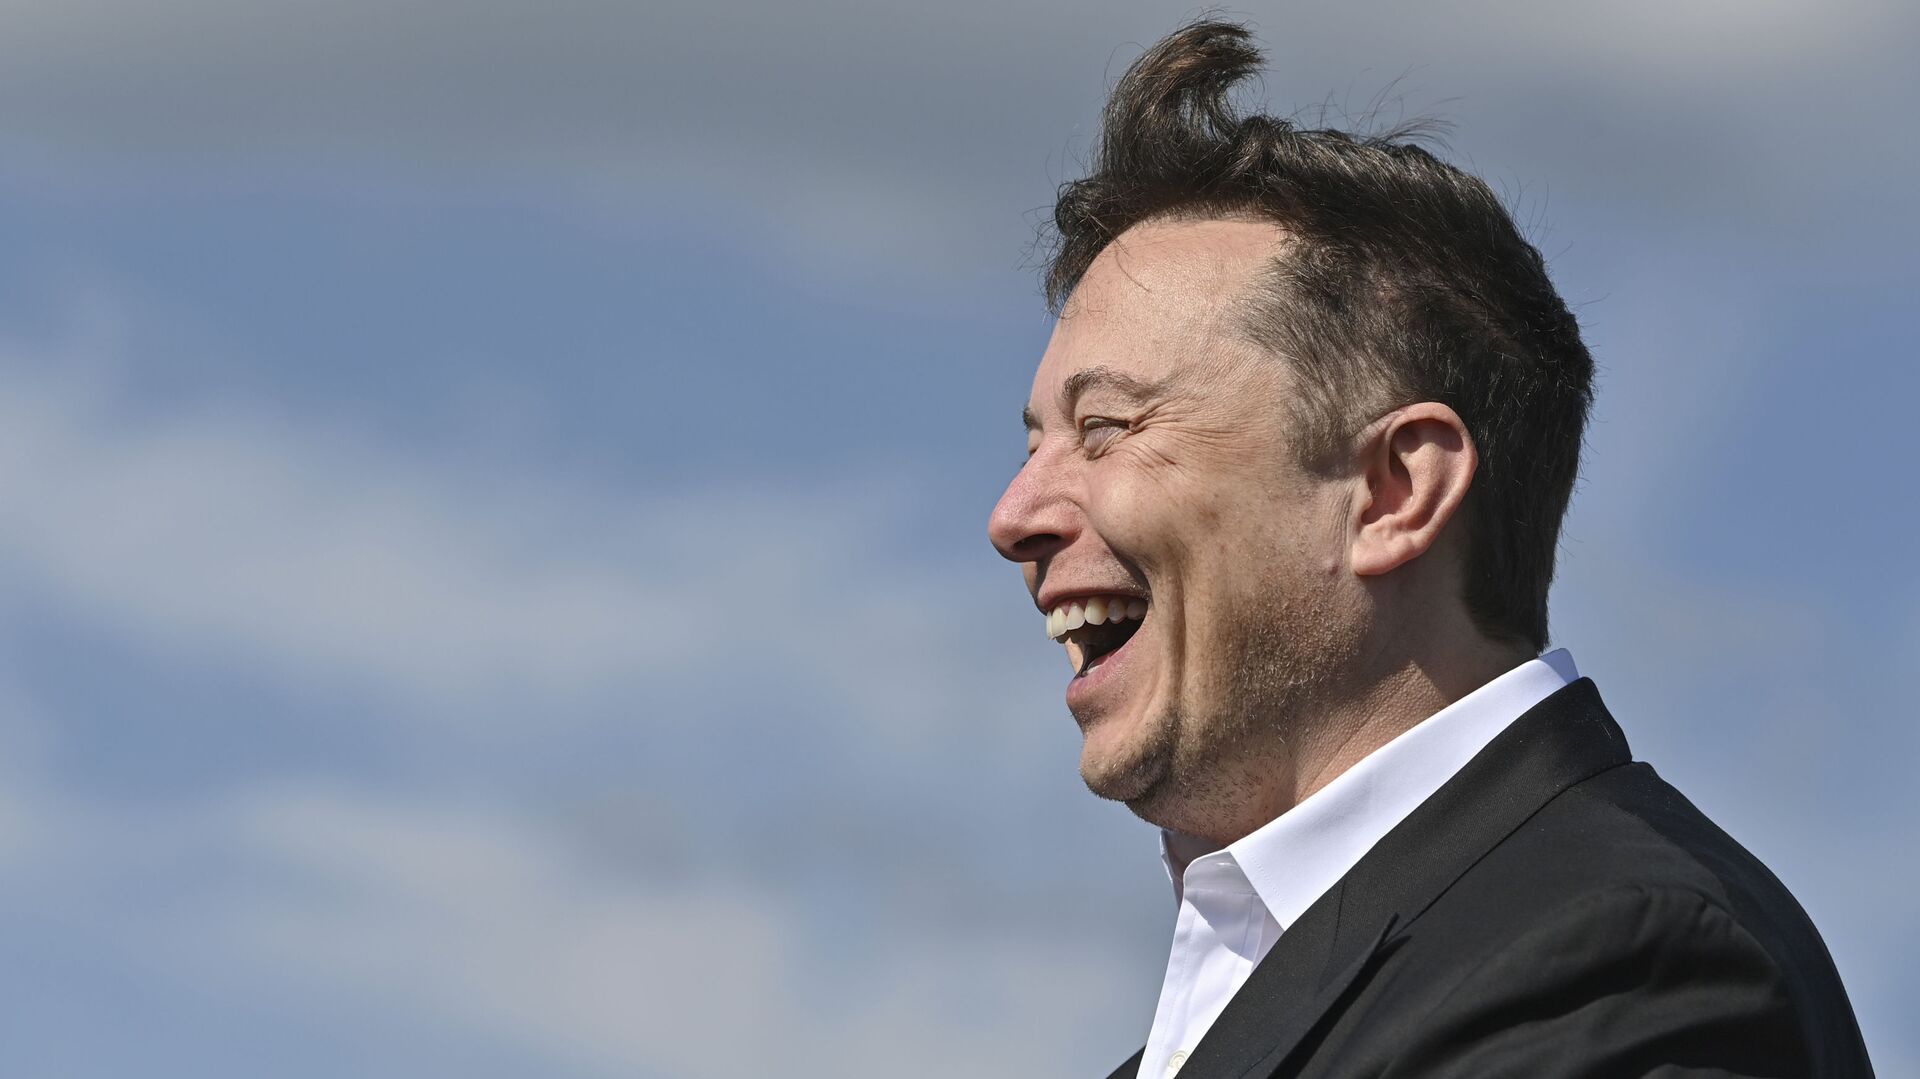 Doanh nhân công nghệ Elon Musk cười khi đến thăm công trường xây dựng Tesla Gigafactory ở Gruenheide gần Berlin, Đức, ngày 3 tháng 9 năm 2020. - Sputnik Việt Nam, 1920, 04.02.2021